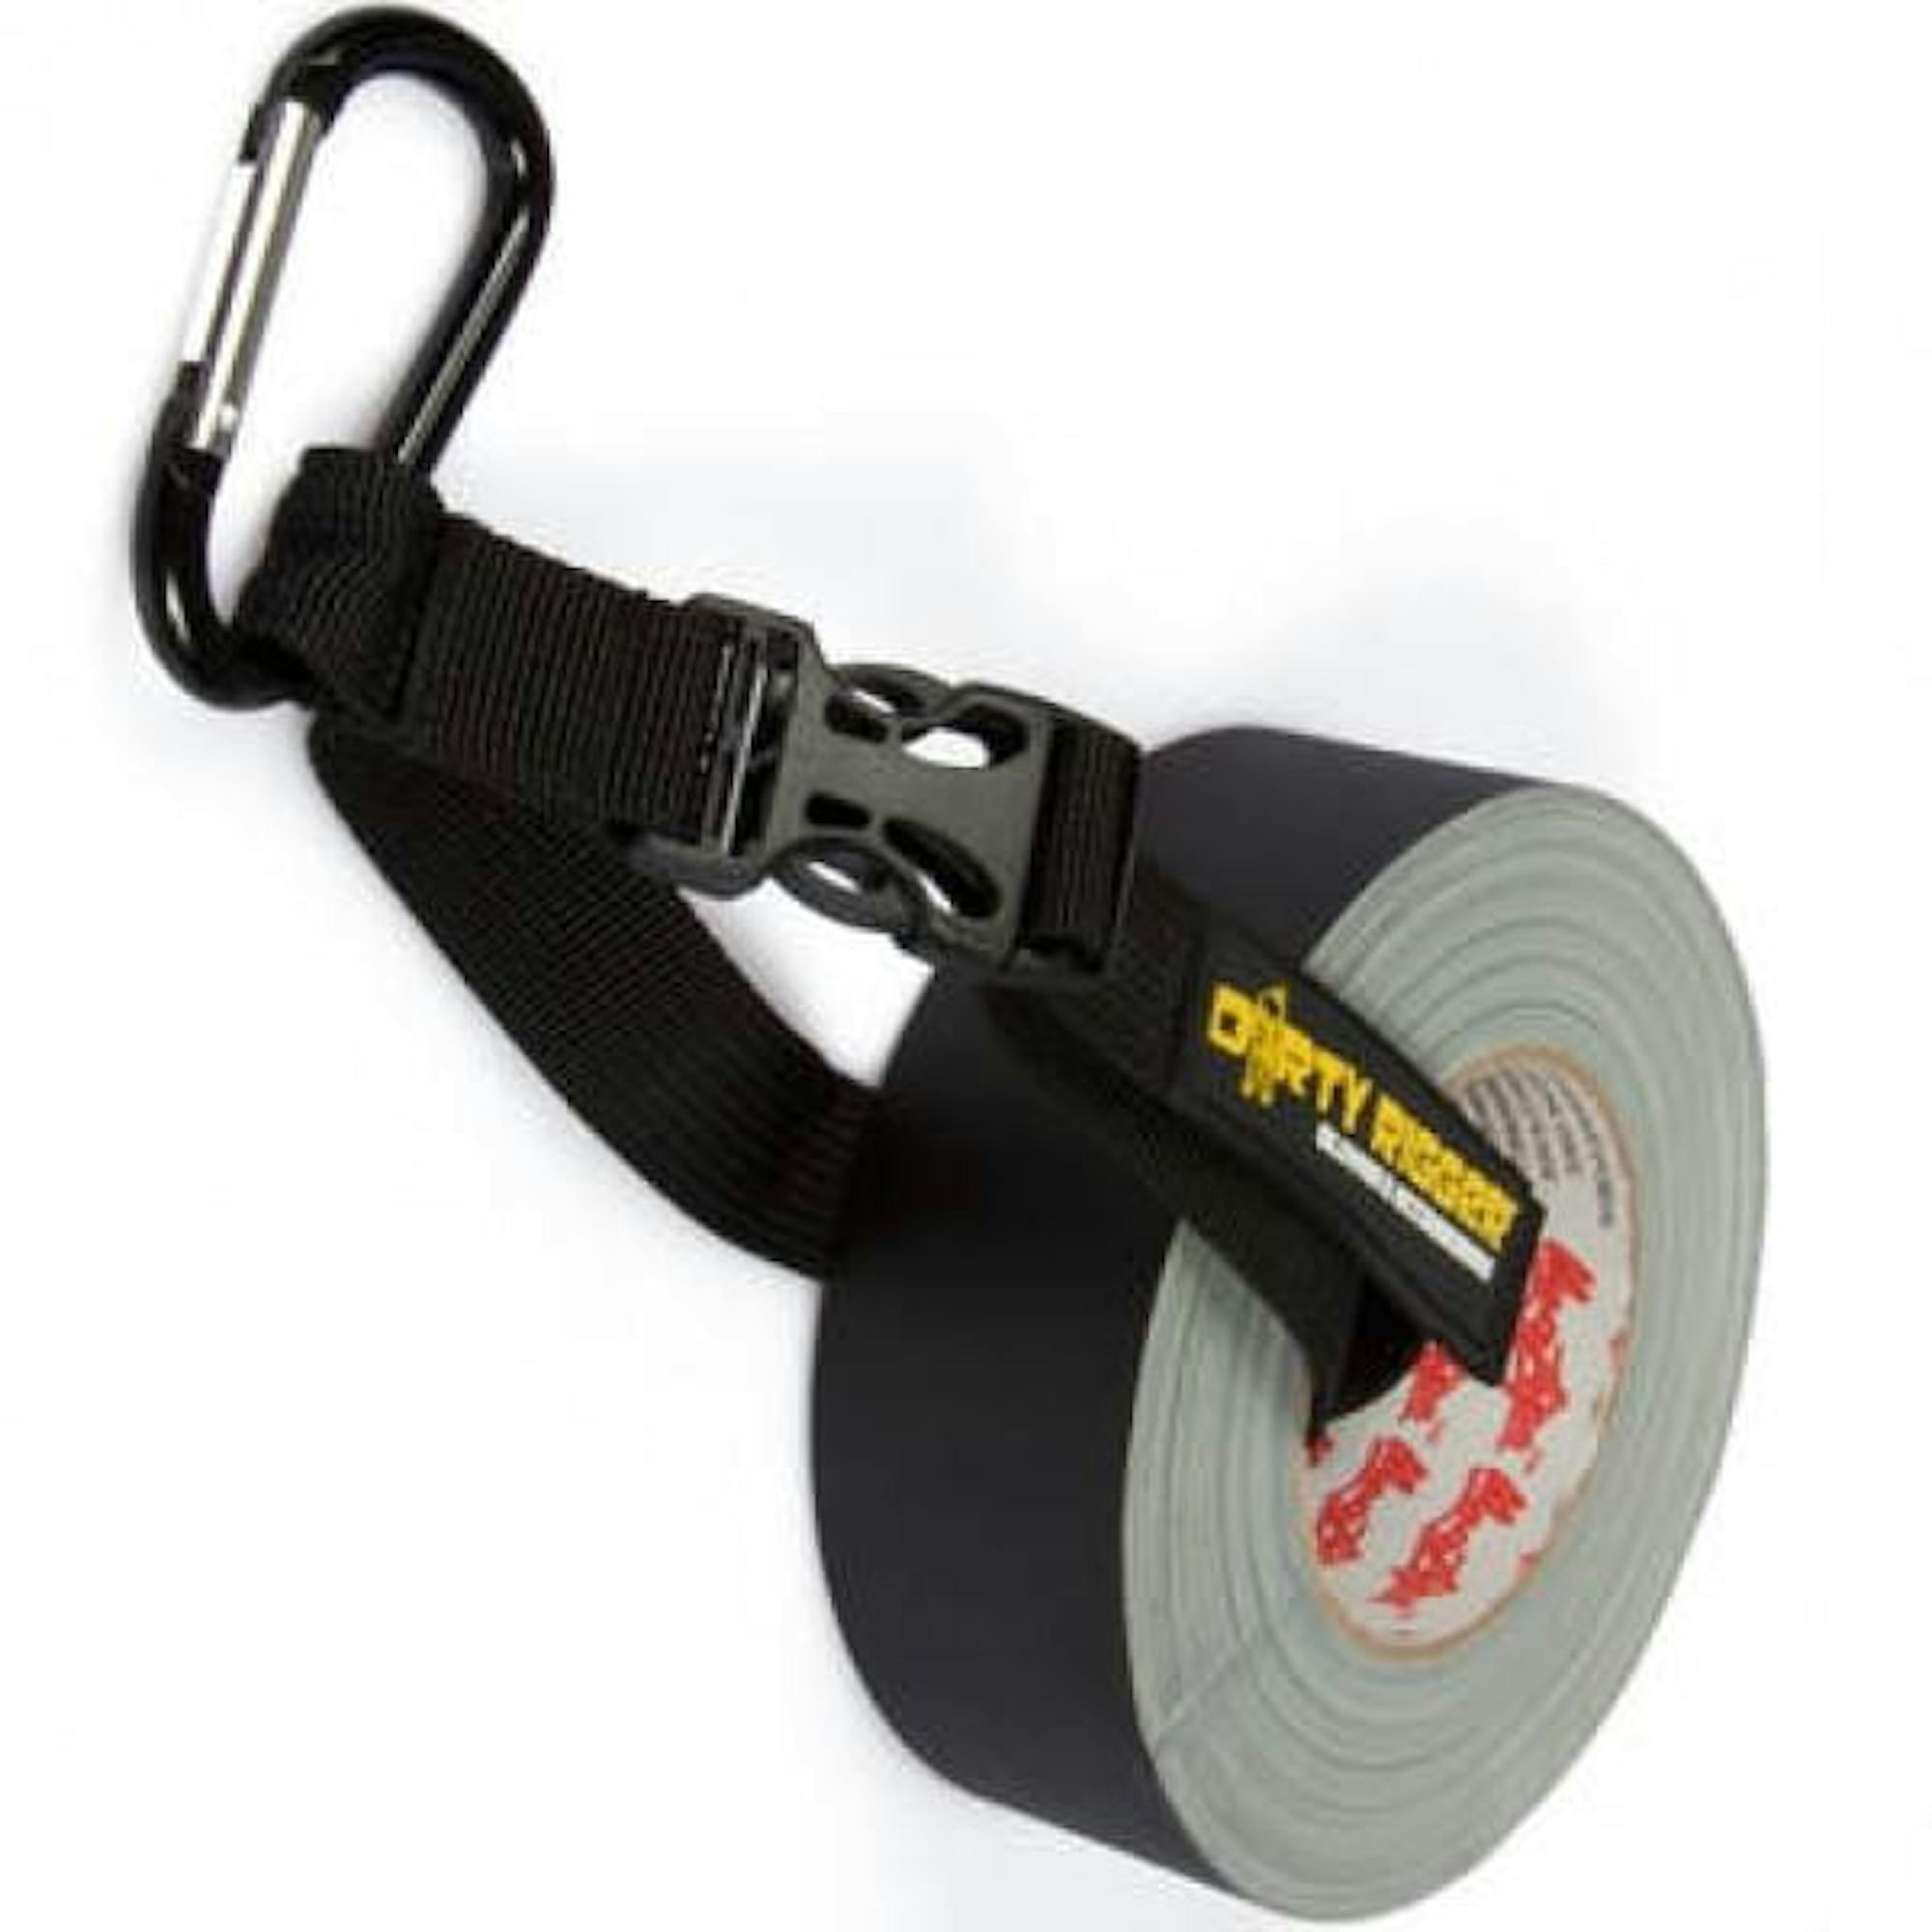 Dirty Rigger Gaffer tape holder